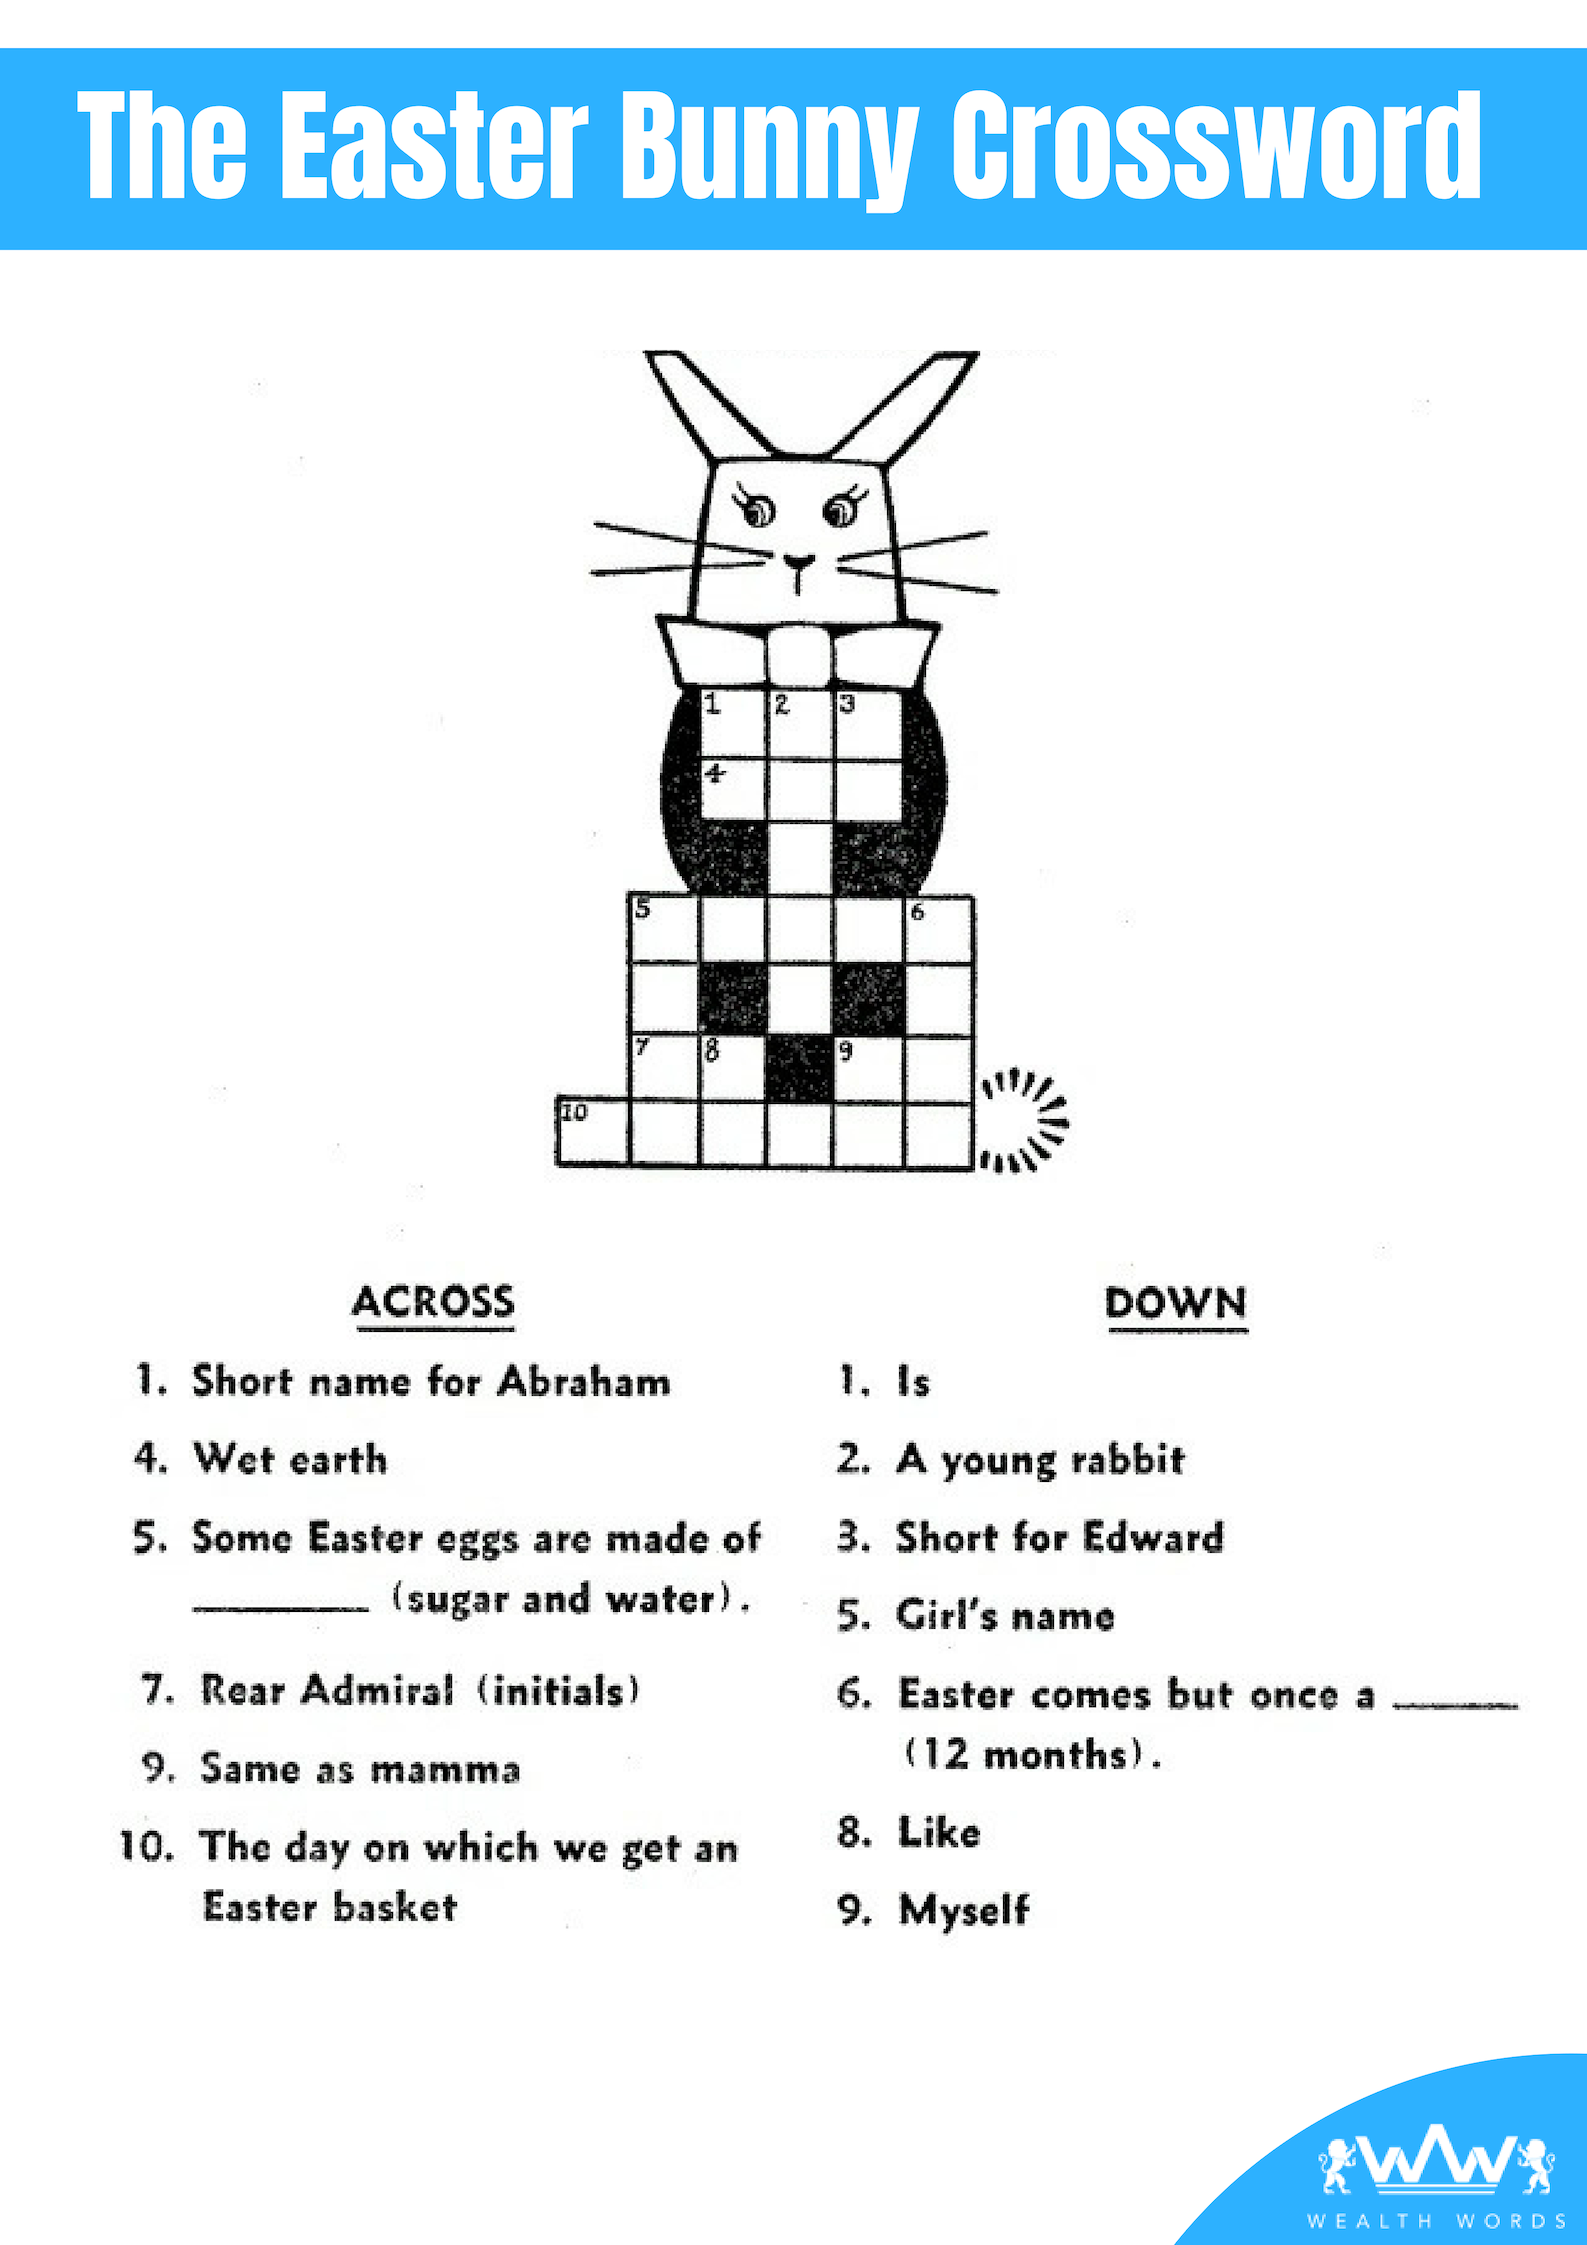 Solve the Crossword